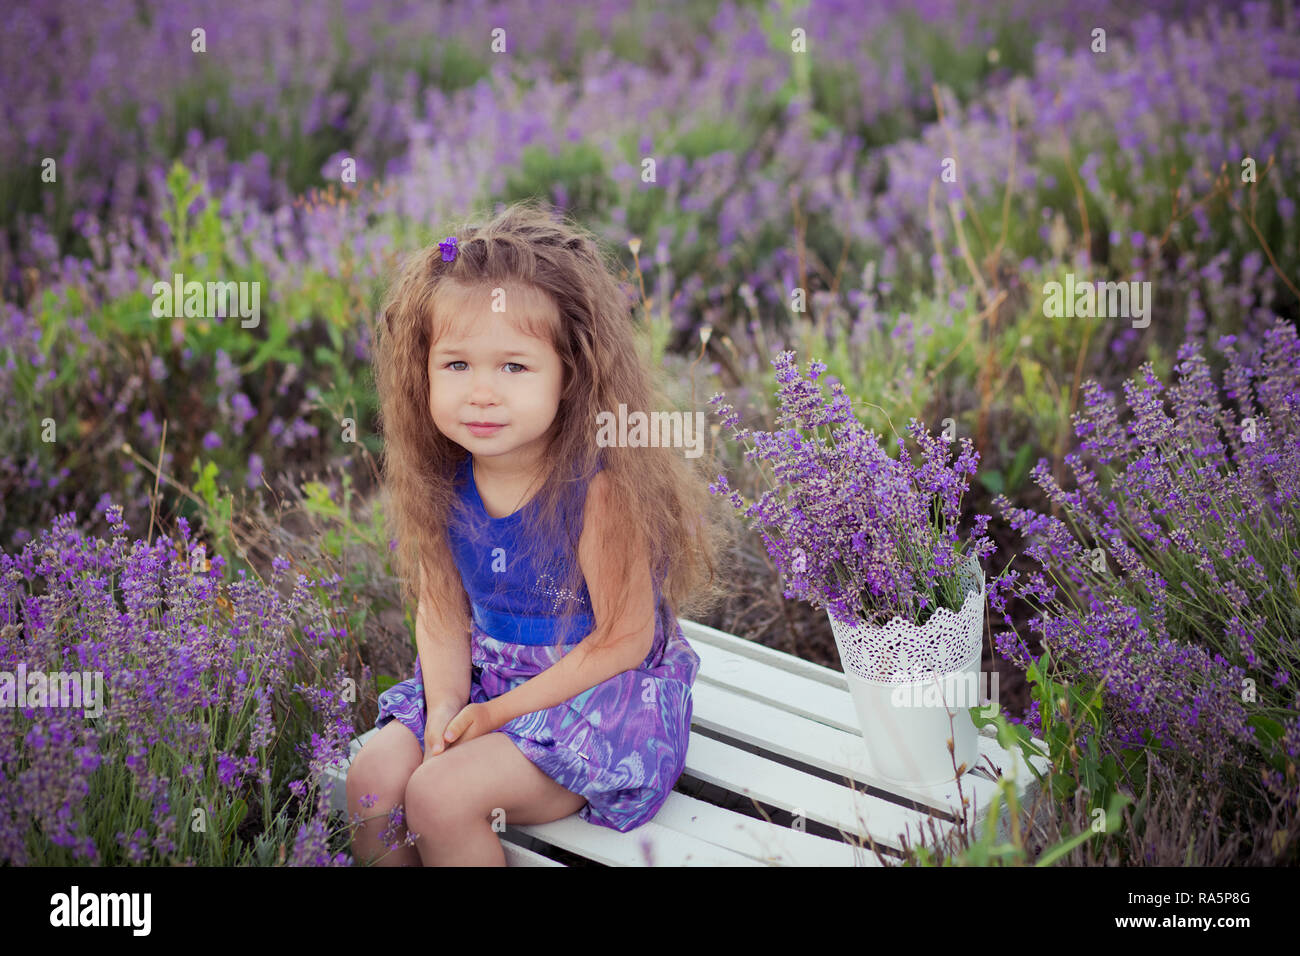 Rubio Castaño icónico cute fancy vestidos niña posando sentada en el centro  del campo prado de lavanda en terciopelo violeta vestido ventilado con  cesta balde lleno de flo Fotografía de stock -